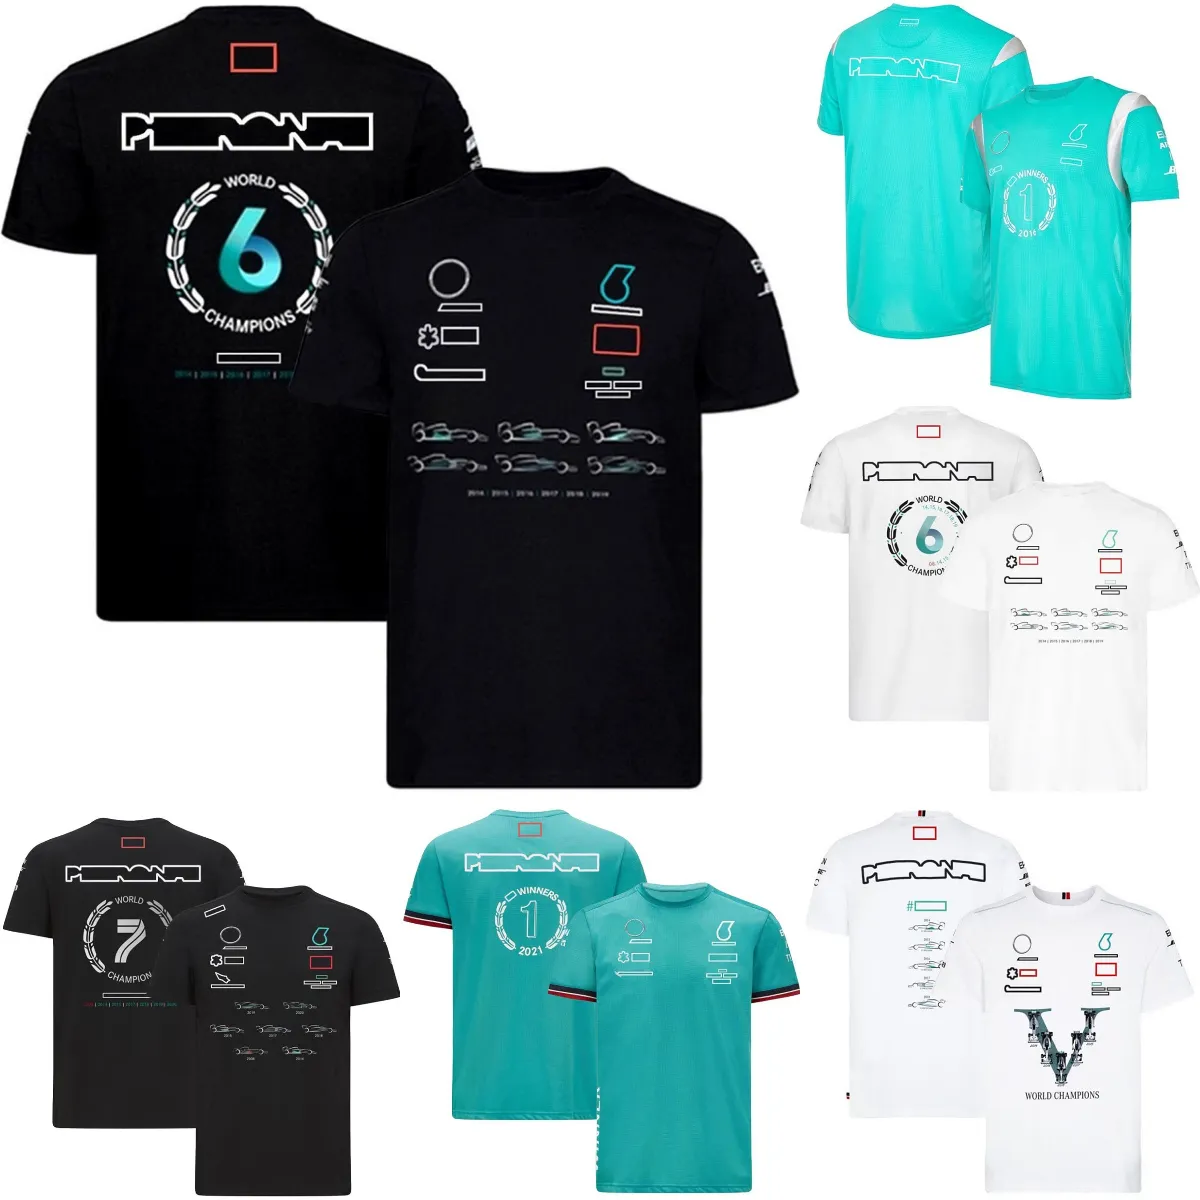 F1 Pilotes CHAMPION DU MONDE T-shirt Formule 1 Équipe De Course T-shirts D'été Respirant Fan De Voiture T-Shirt Hommes Jersey Grande Taille Personnalisé